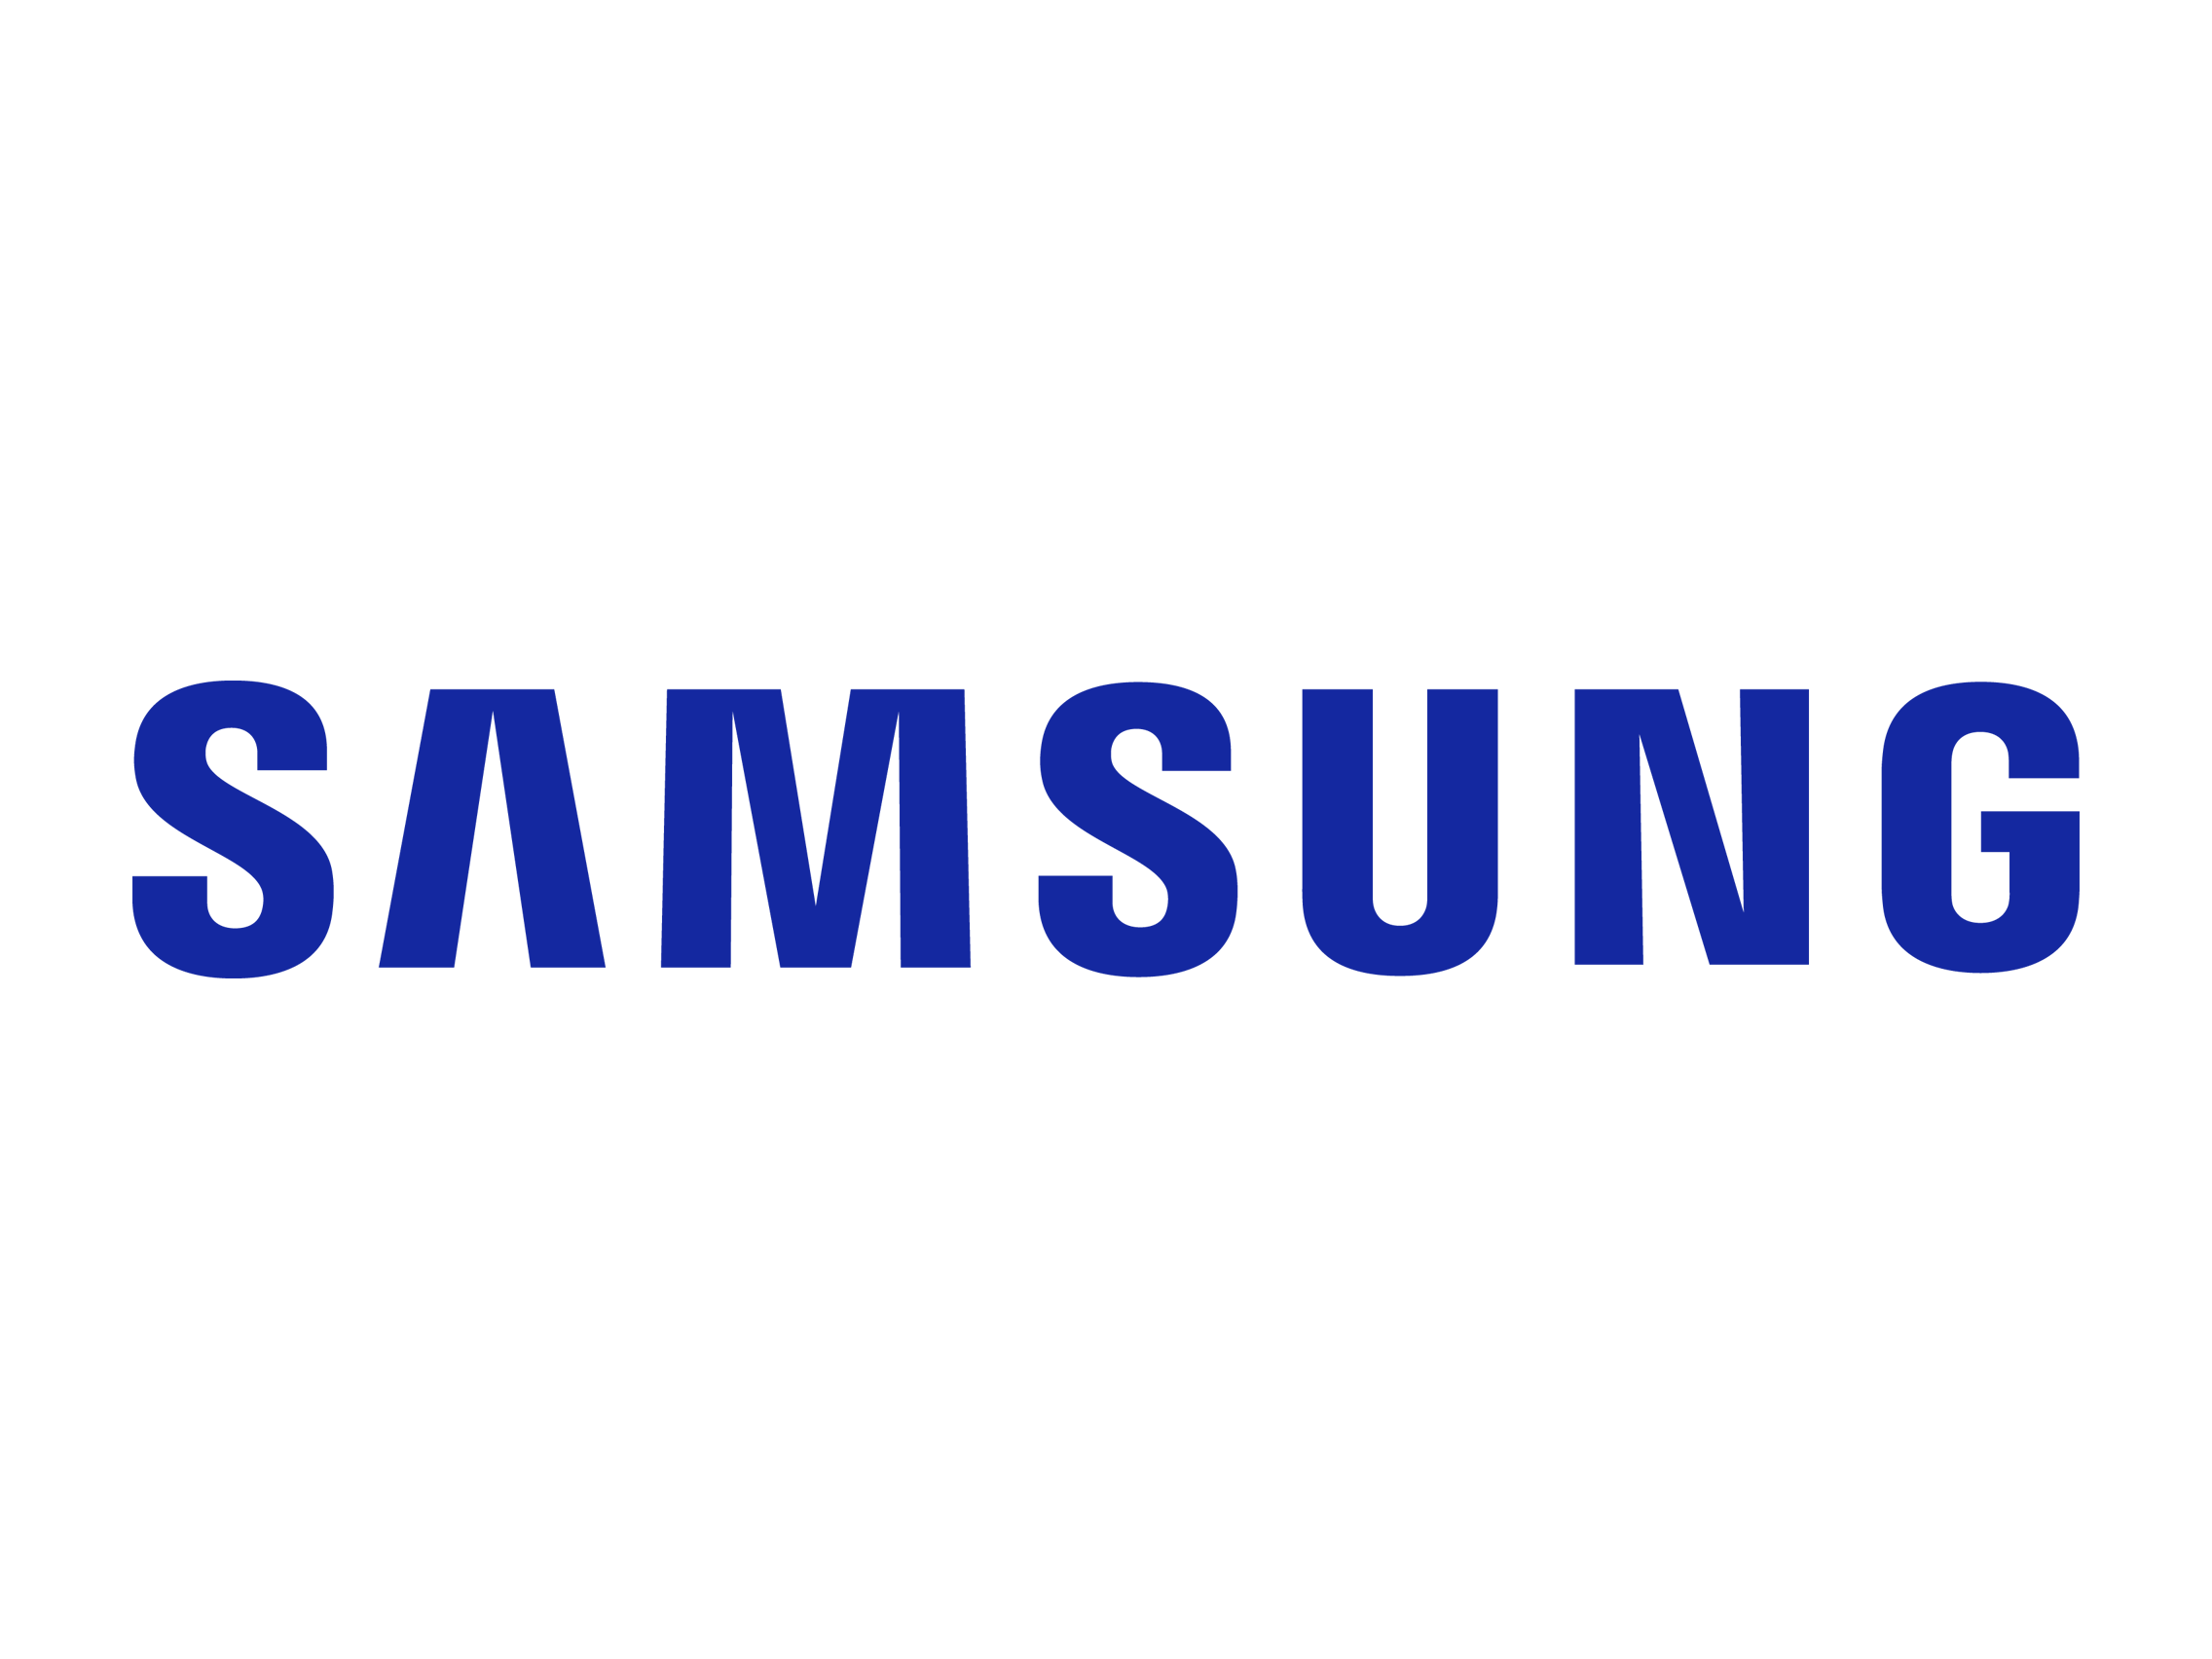 Заправка картриджей Samsung